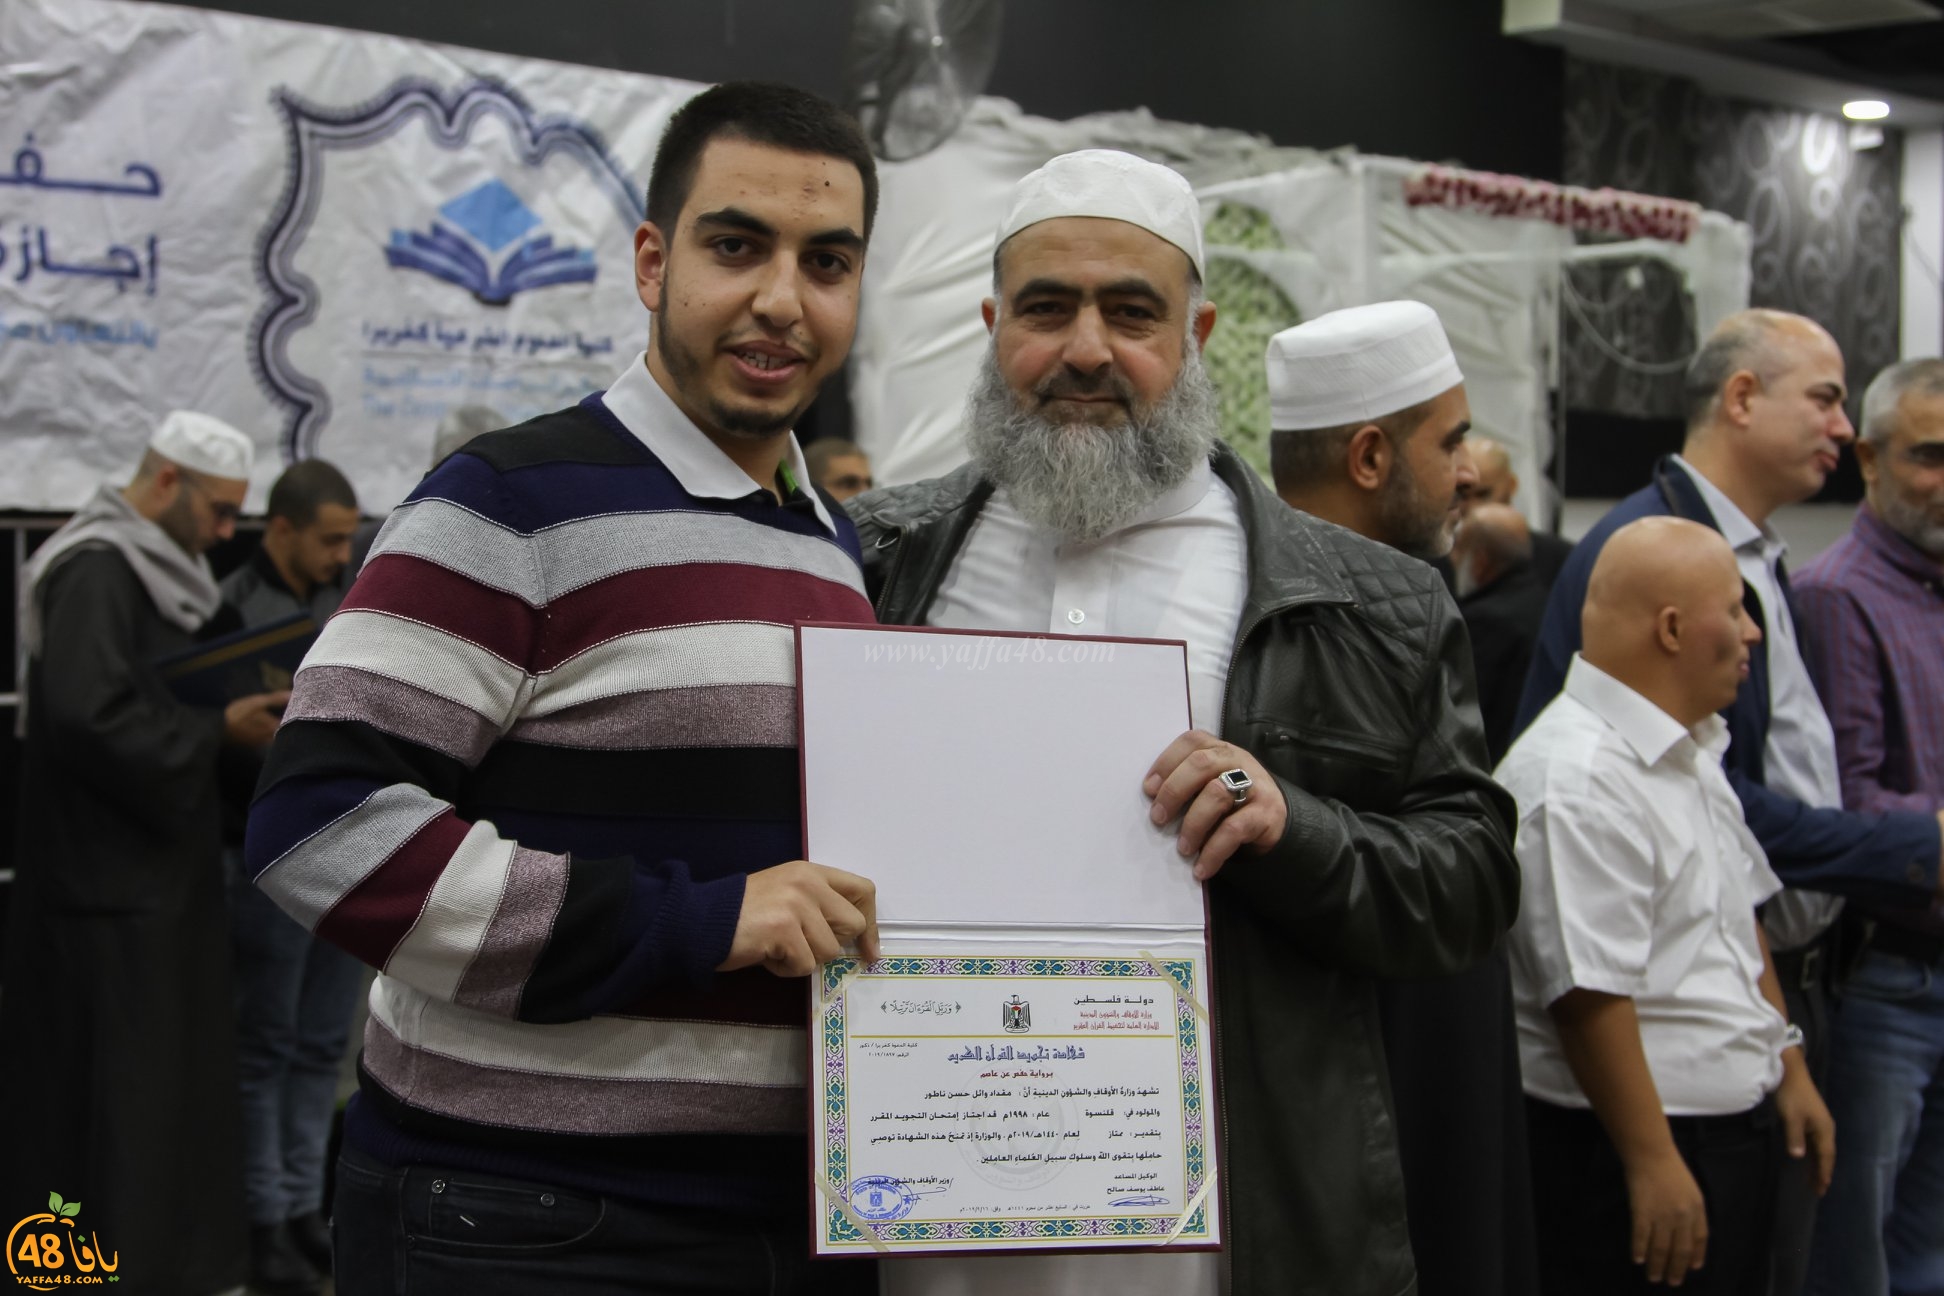  كلية الشريعة كفربرا تخرّج 150 طالباً من حملة الاجازة في قراءة حفص عن عاصم